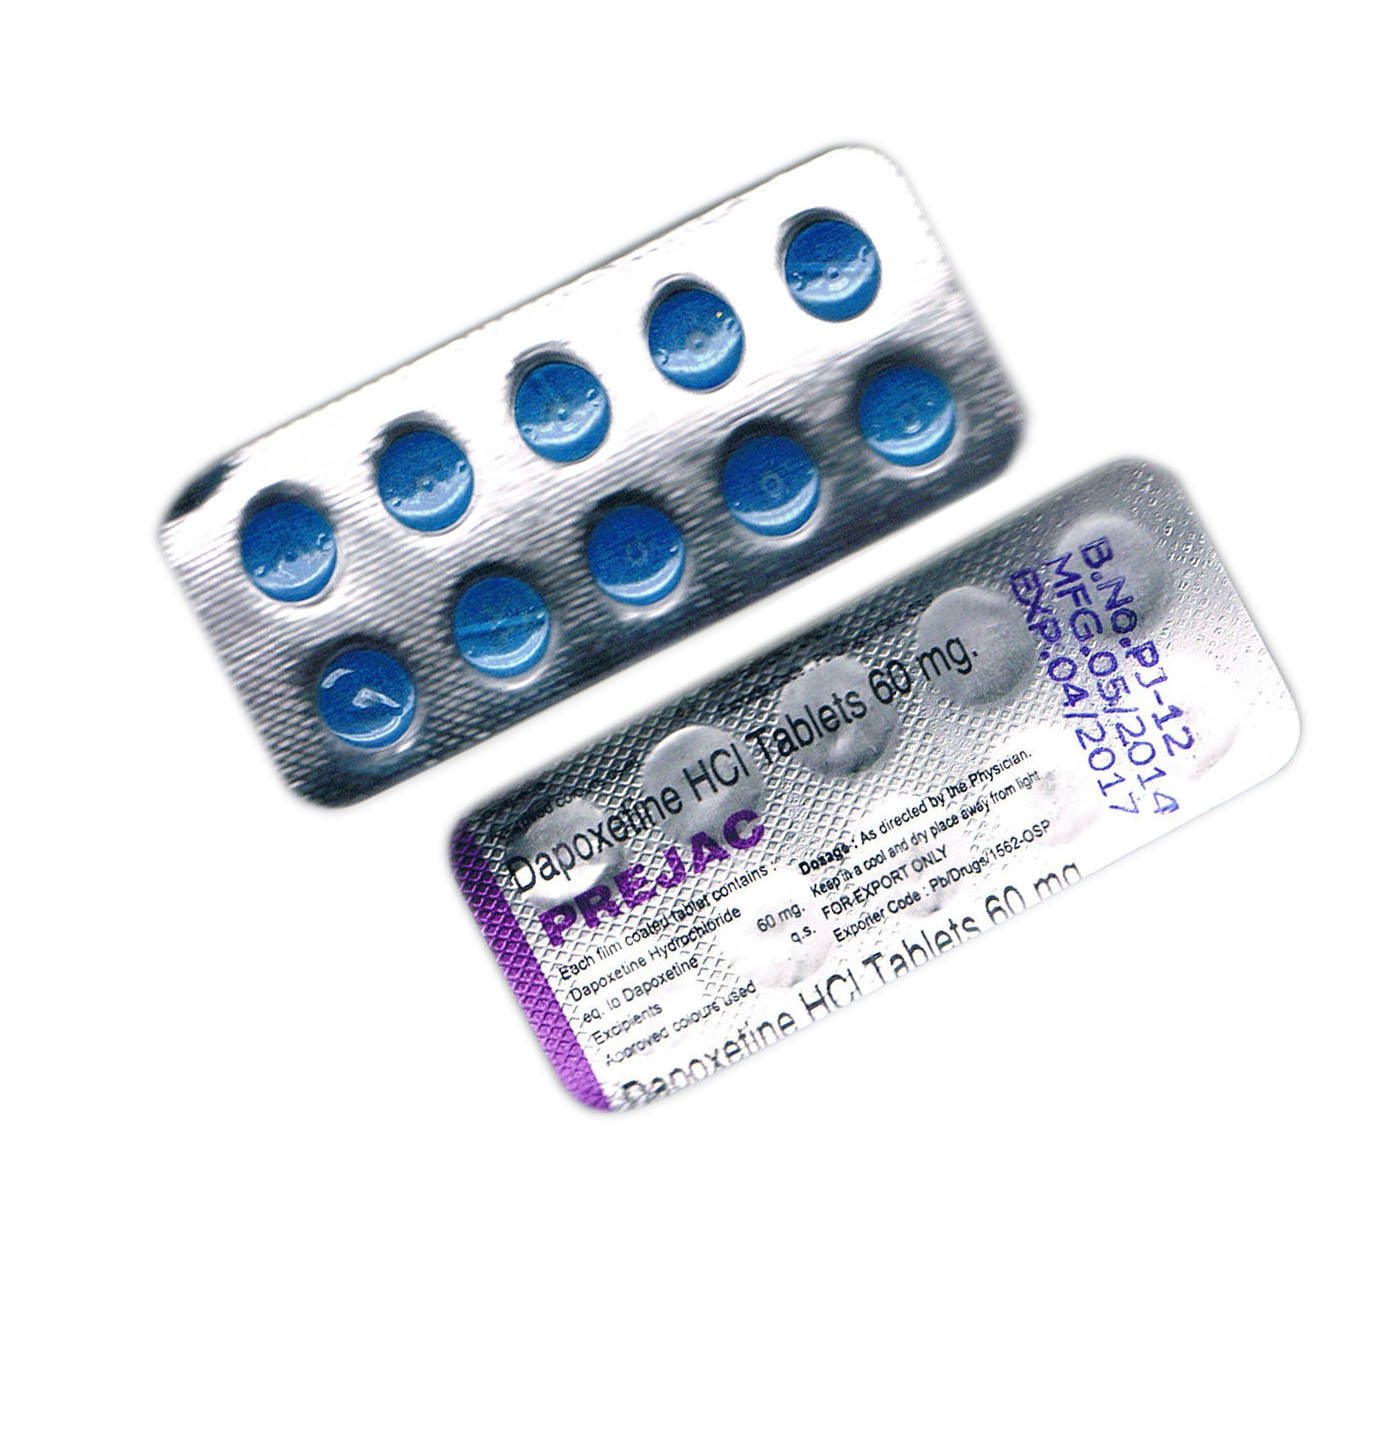 Купить мужской таблетка. Дапоксетин Poxet-90 dapoxetine 90 MG 1 Tab. Таблетки для потенции. Мужские таблетки. Таблетки для повышения потенции.